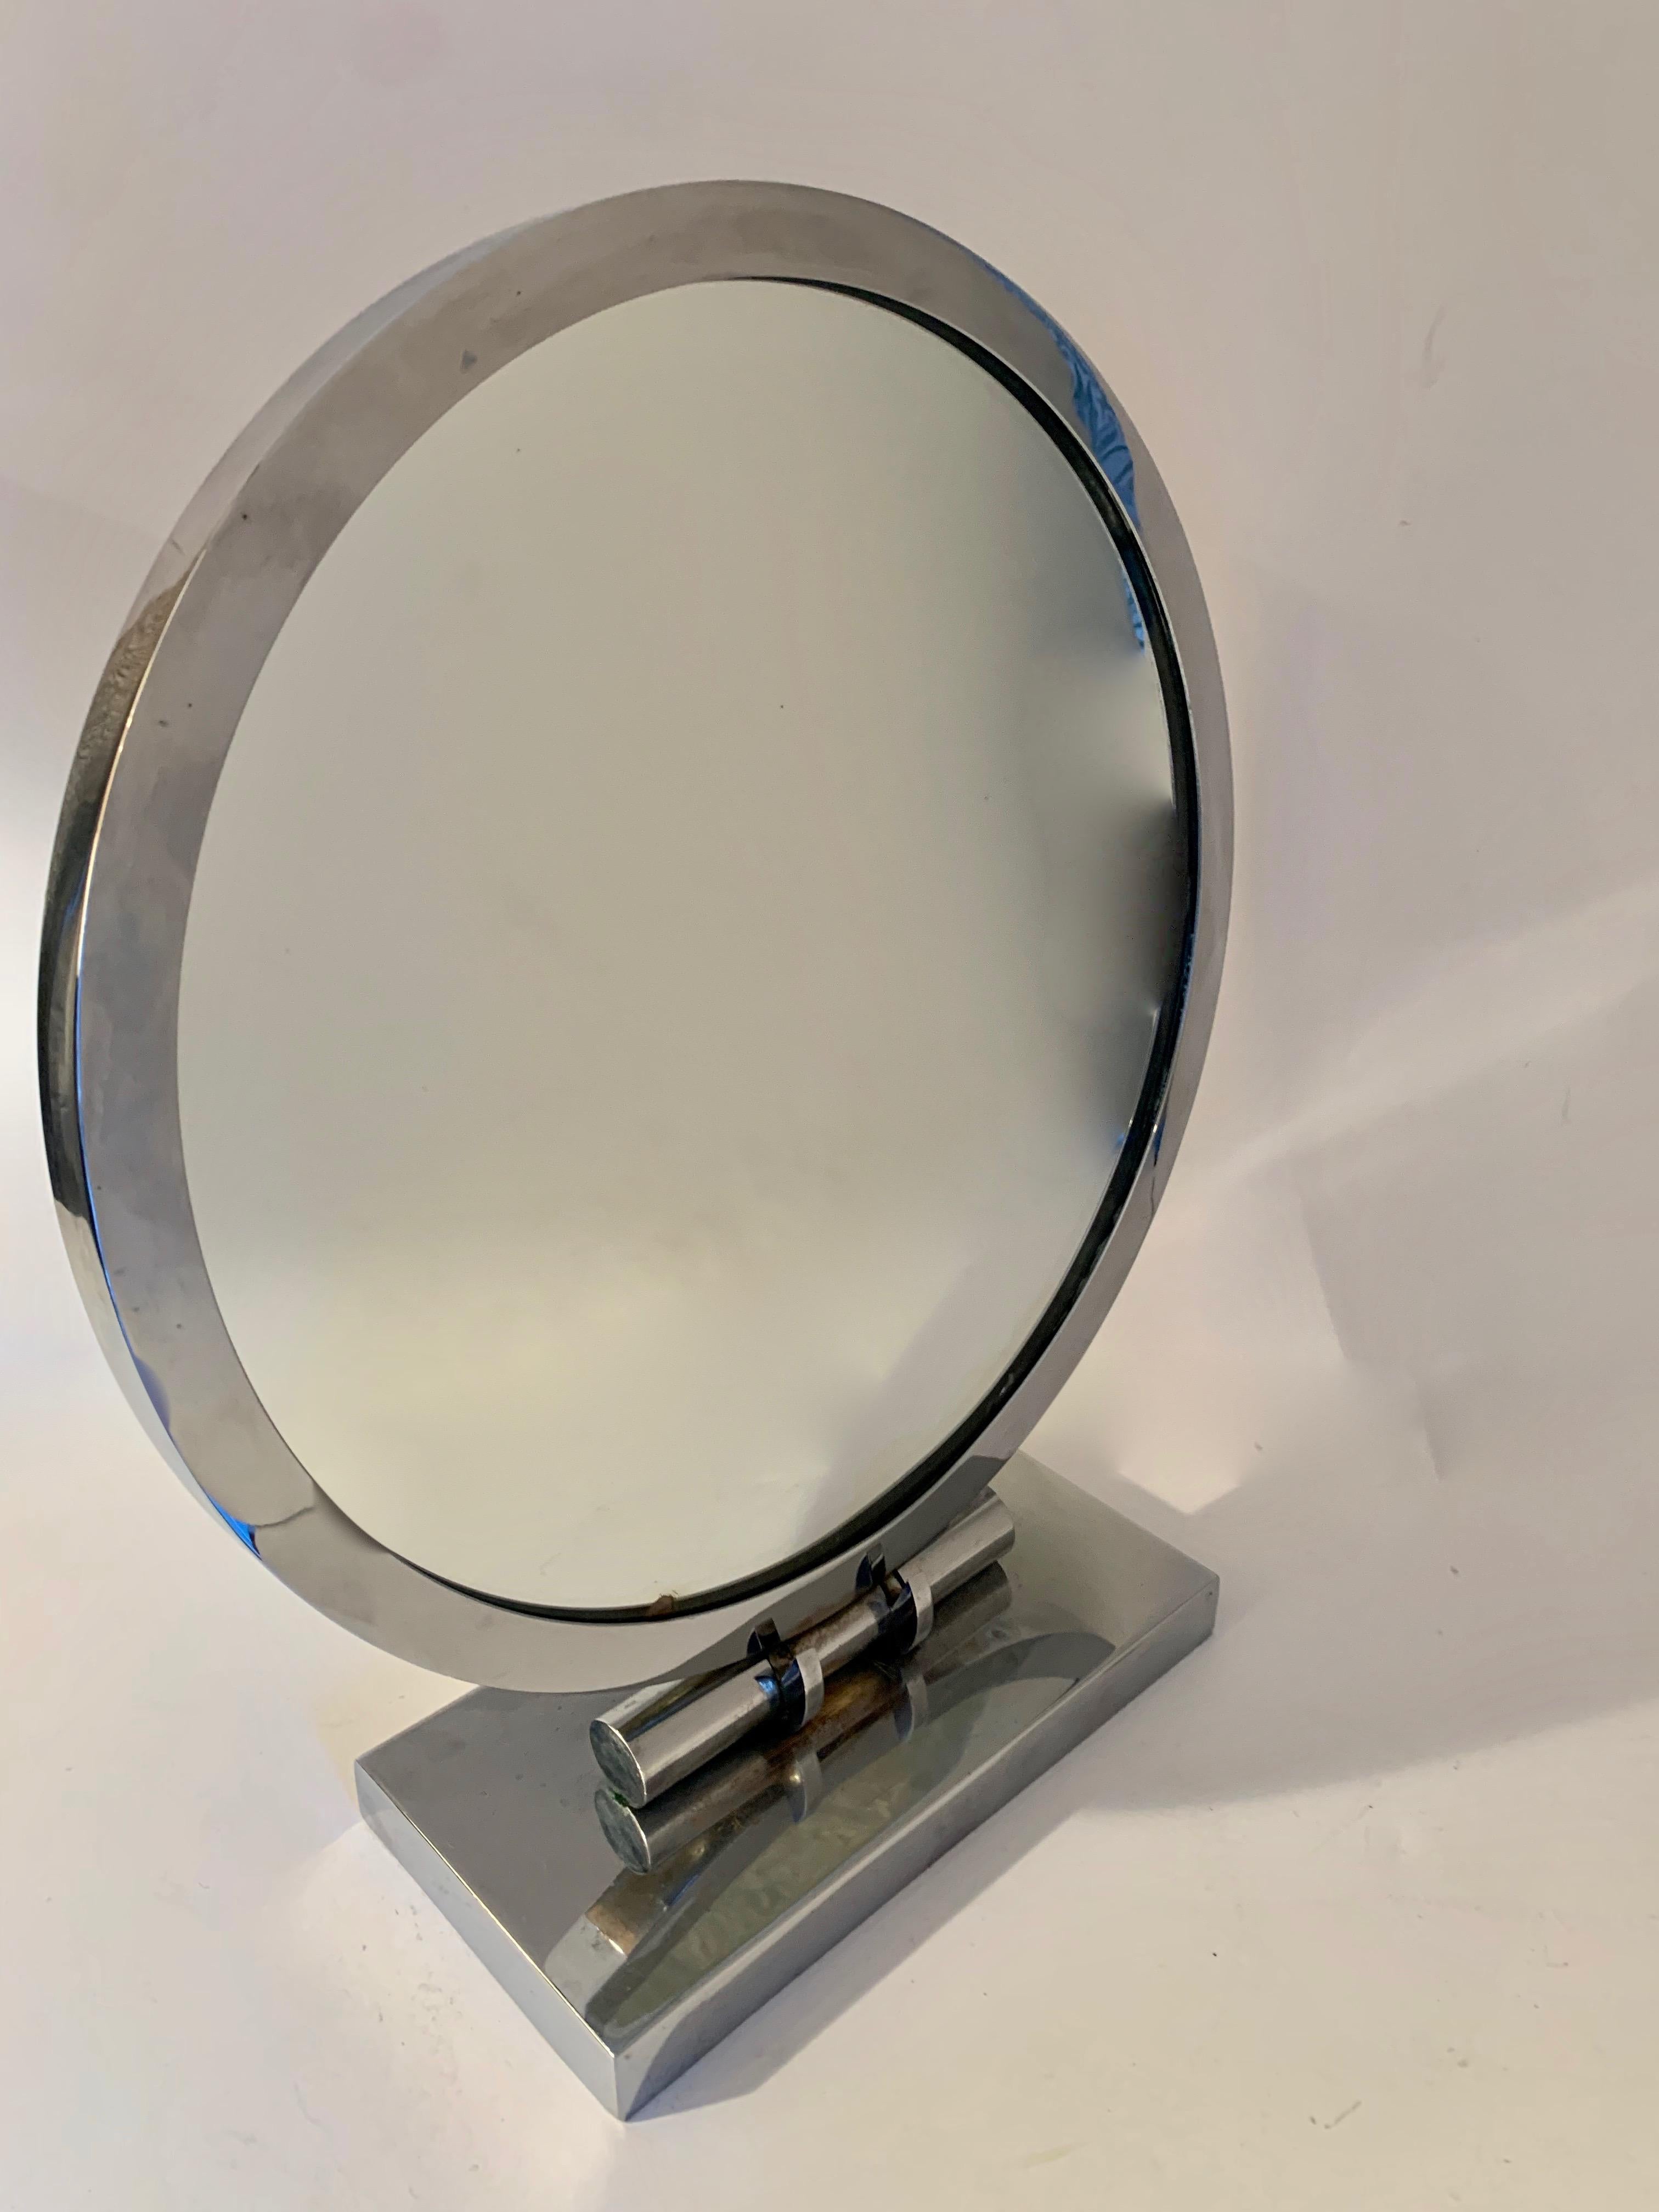 Art Deco verstellbarer Kosmetikspiegel - verchromt. Der Spiegel ist einseitig und hat einen kleinen Fleck auf dem unteren Teil des Spiegels. Der Sockel ist sehr gut verstellbar und funktioniert gut. Der Sockel weist zwar einige Altersspuren auf, ist